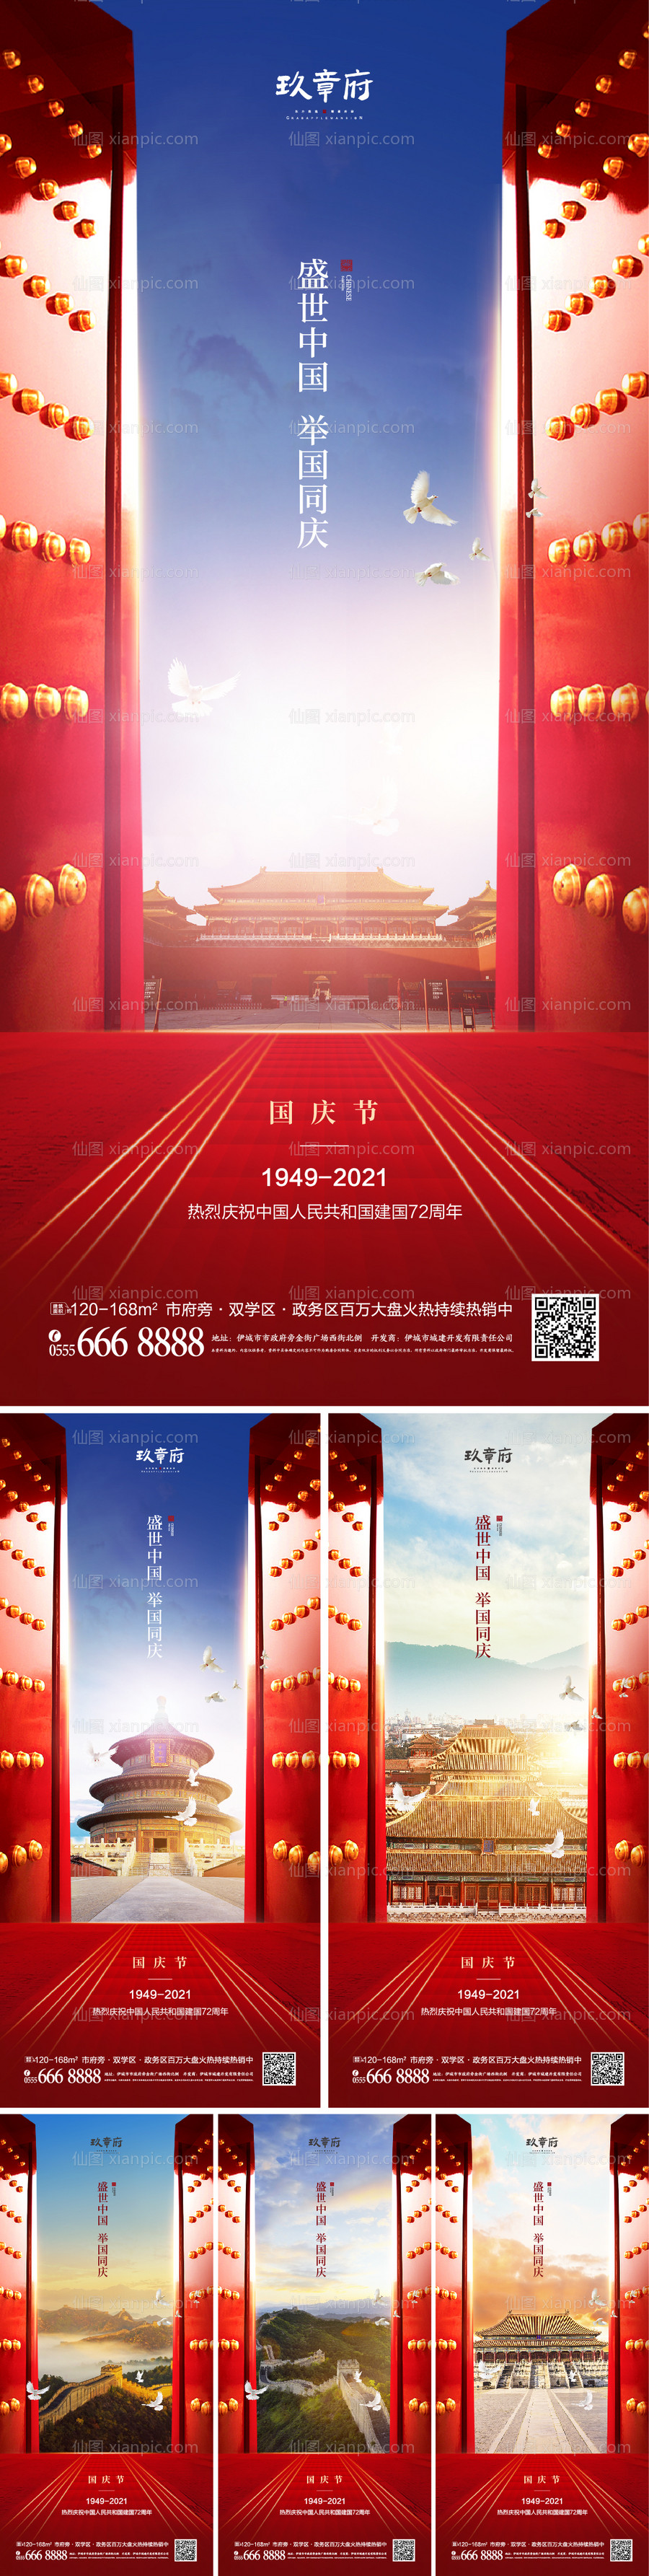 素材乐-国庆节红色大门系列海报